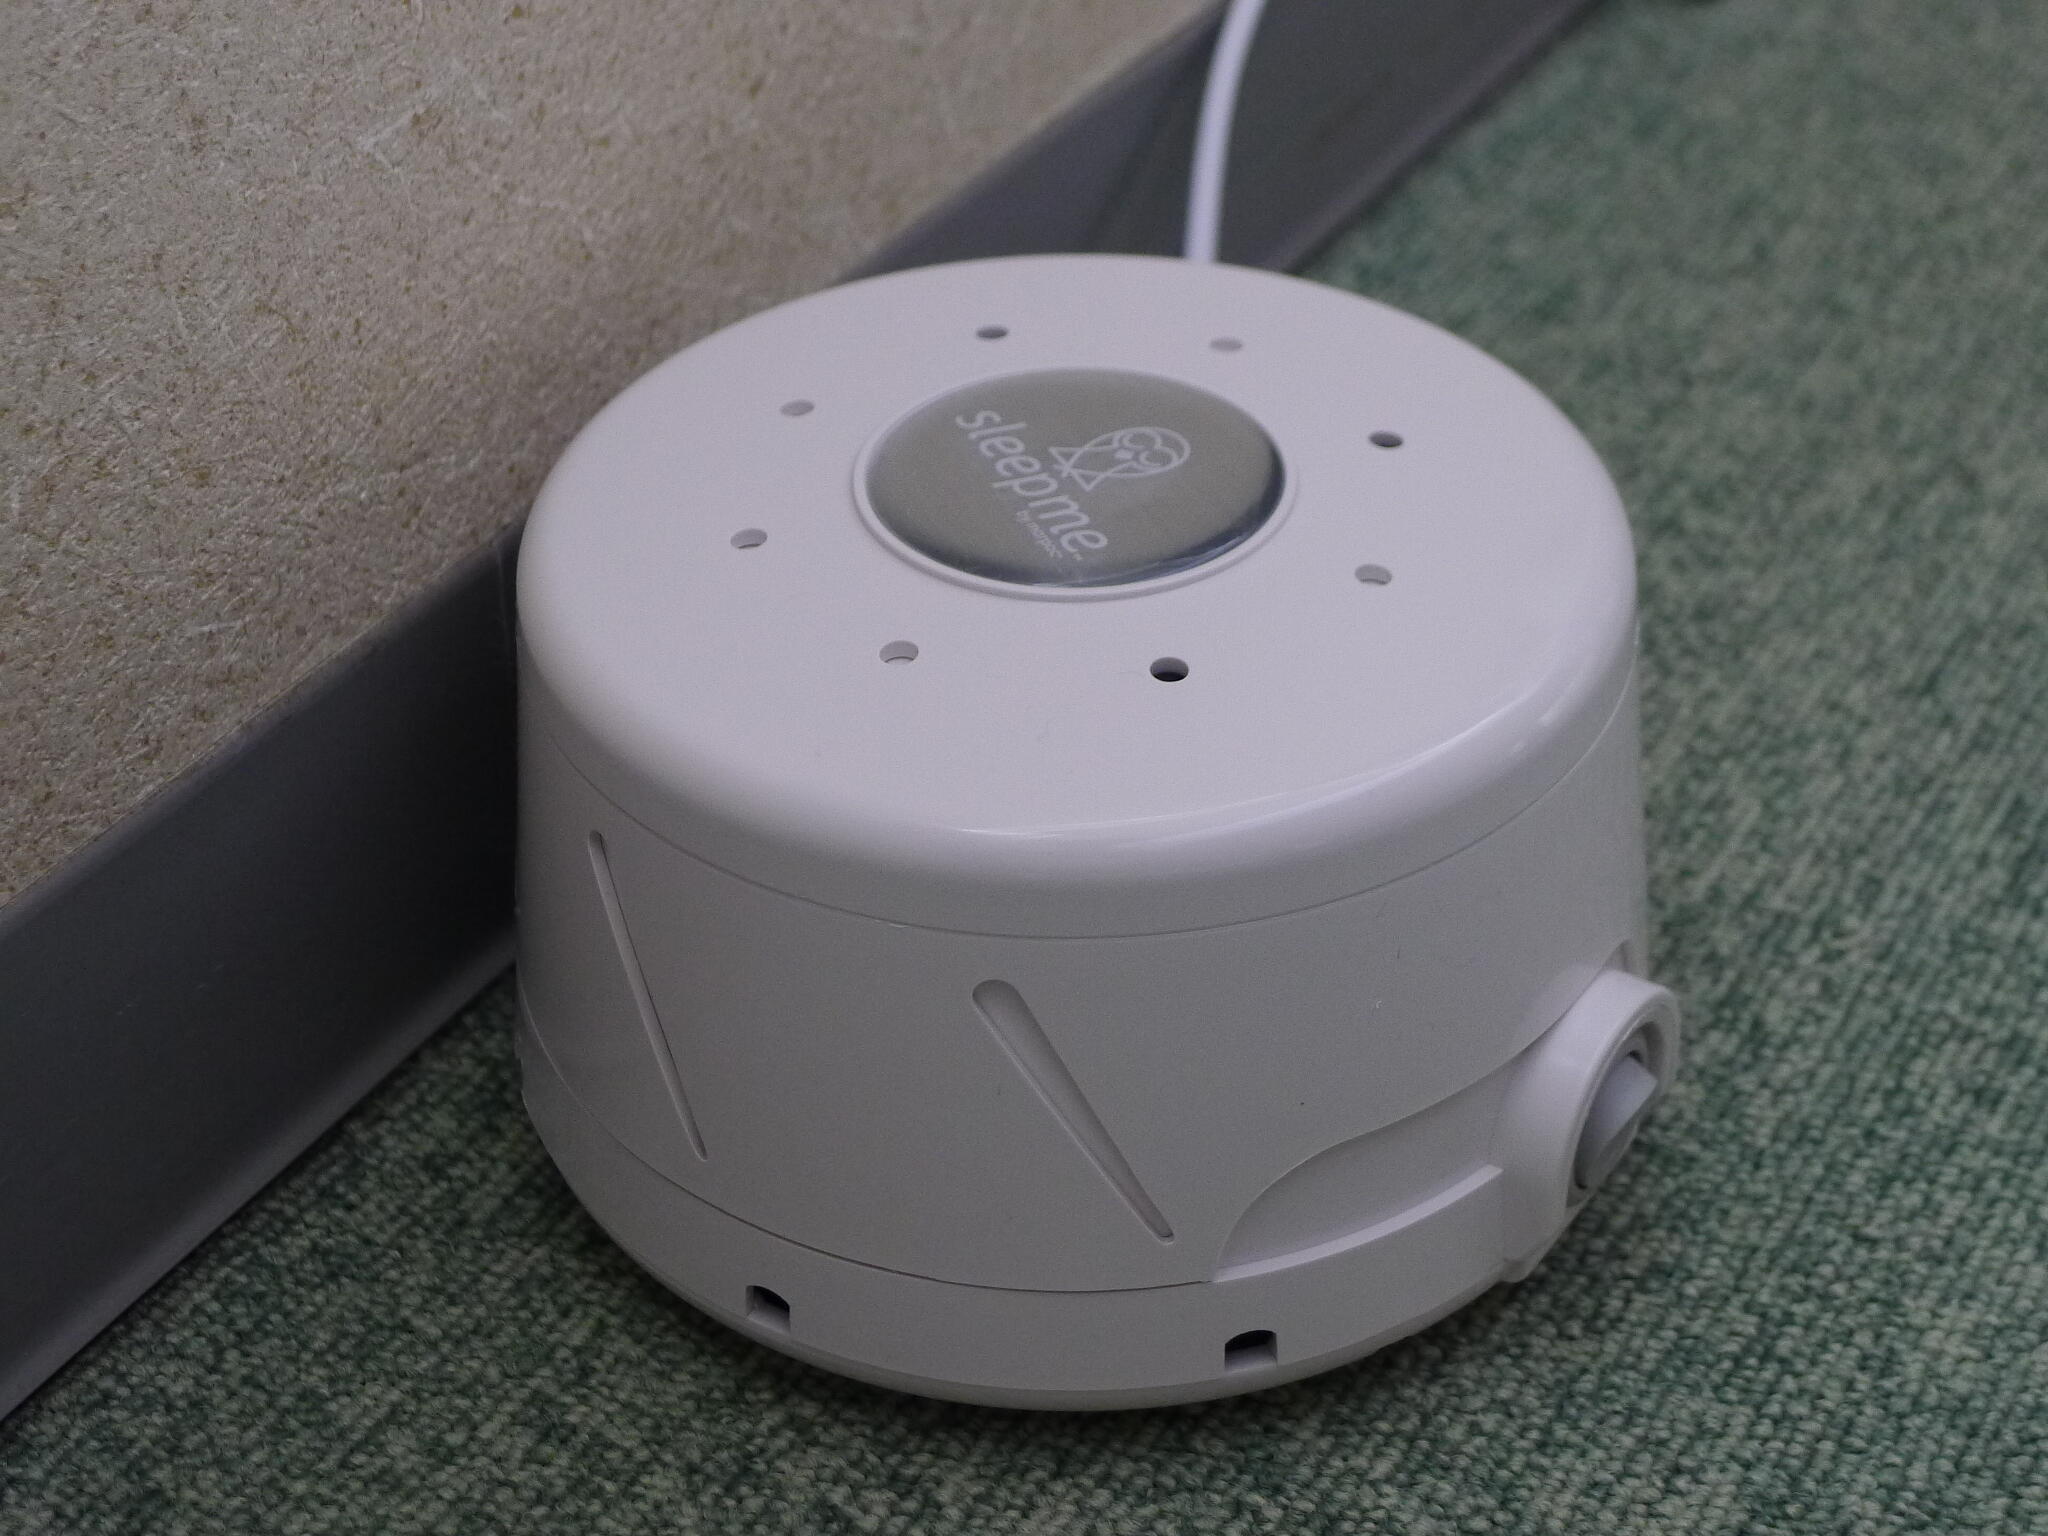 神戸三宮むつう整体院からのお知らせ(【外部からの騒音を抑えるために】当院は米国マーパック社のホワイトノイズマシンを導入しました。)に関する写真